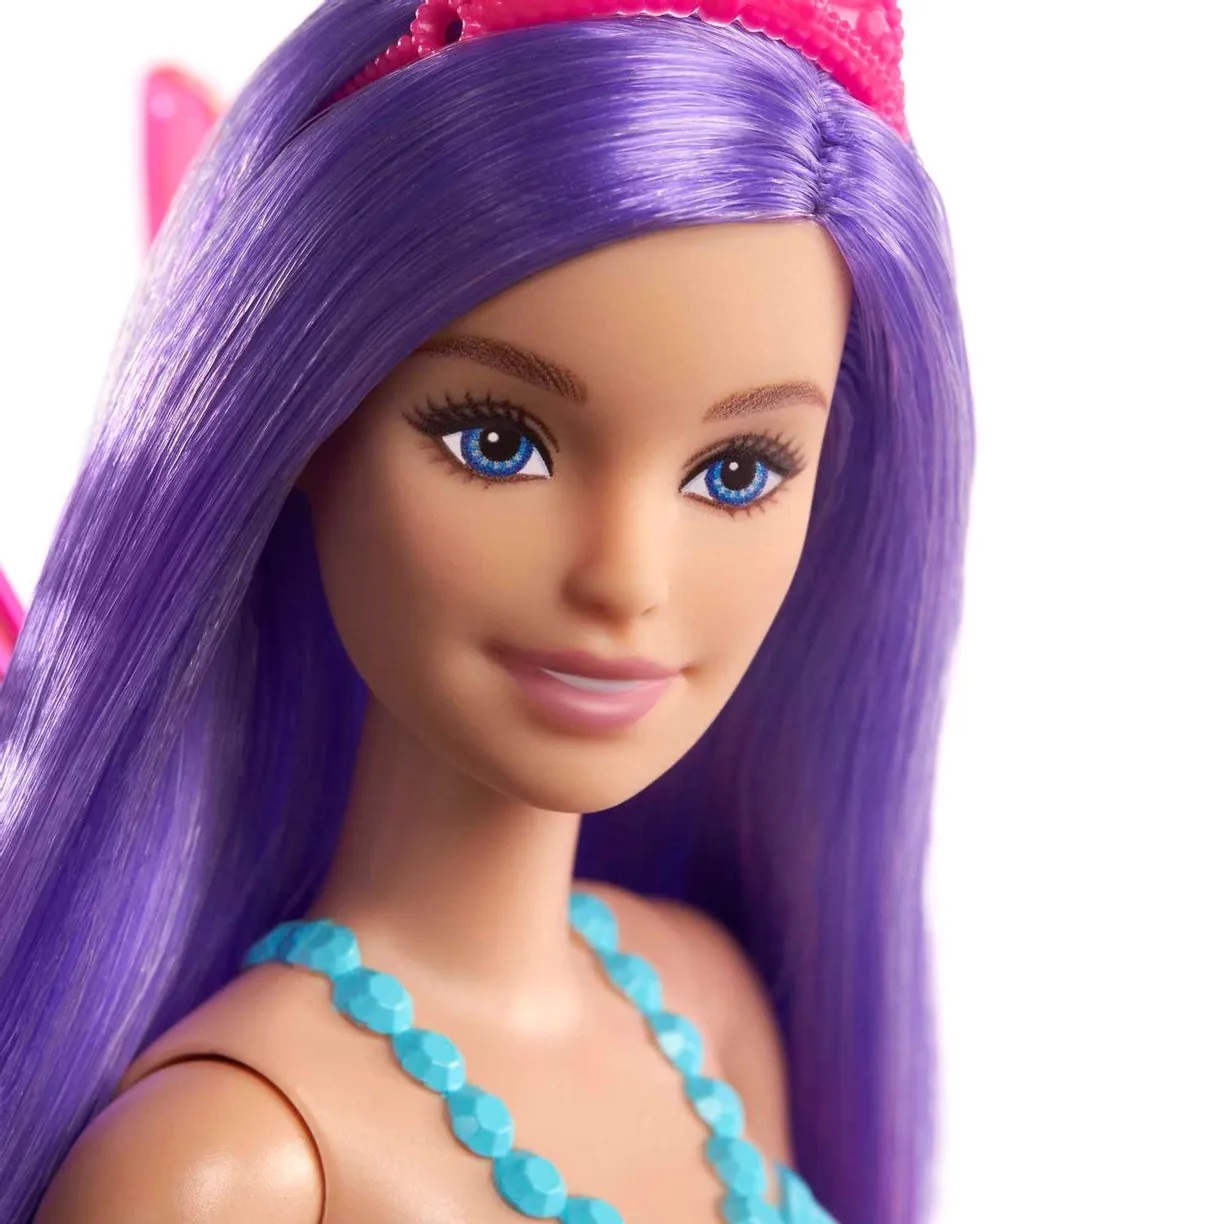 Кукла Barbie GXD59 Фея